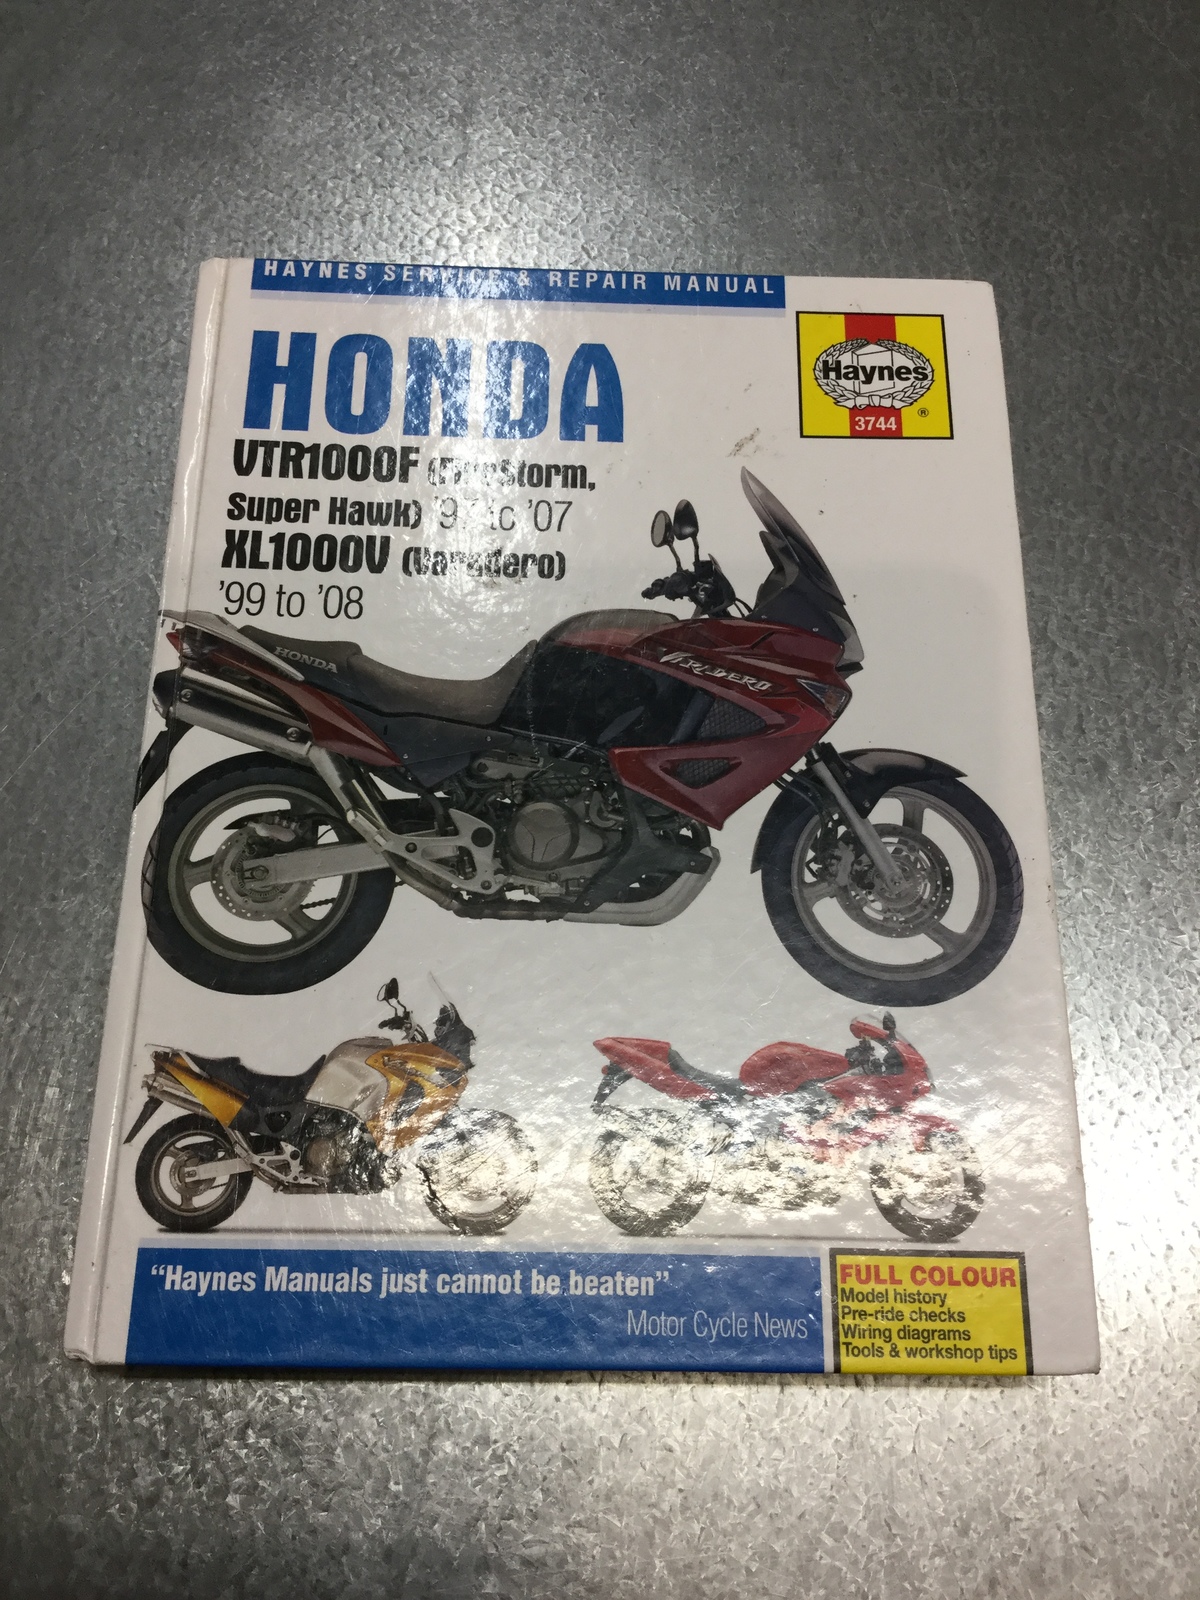 車・バイク・自転車HONDA VTR1000F SUPER HAWK サービスマニュアル 英語版